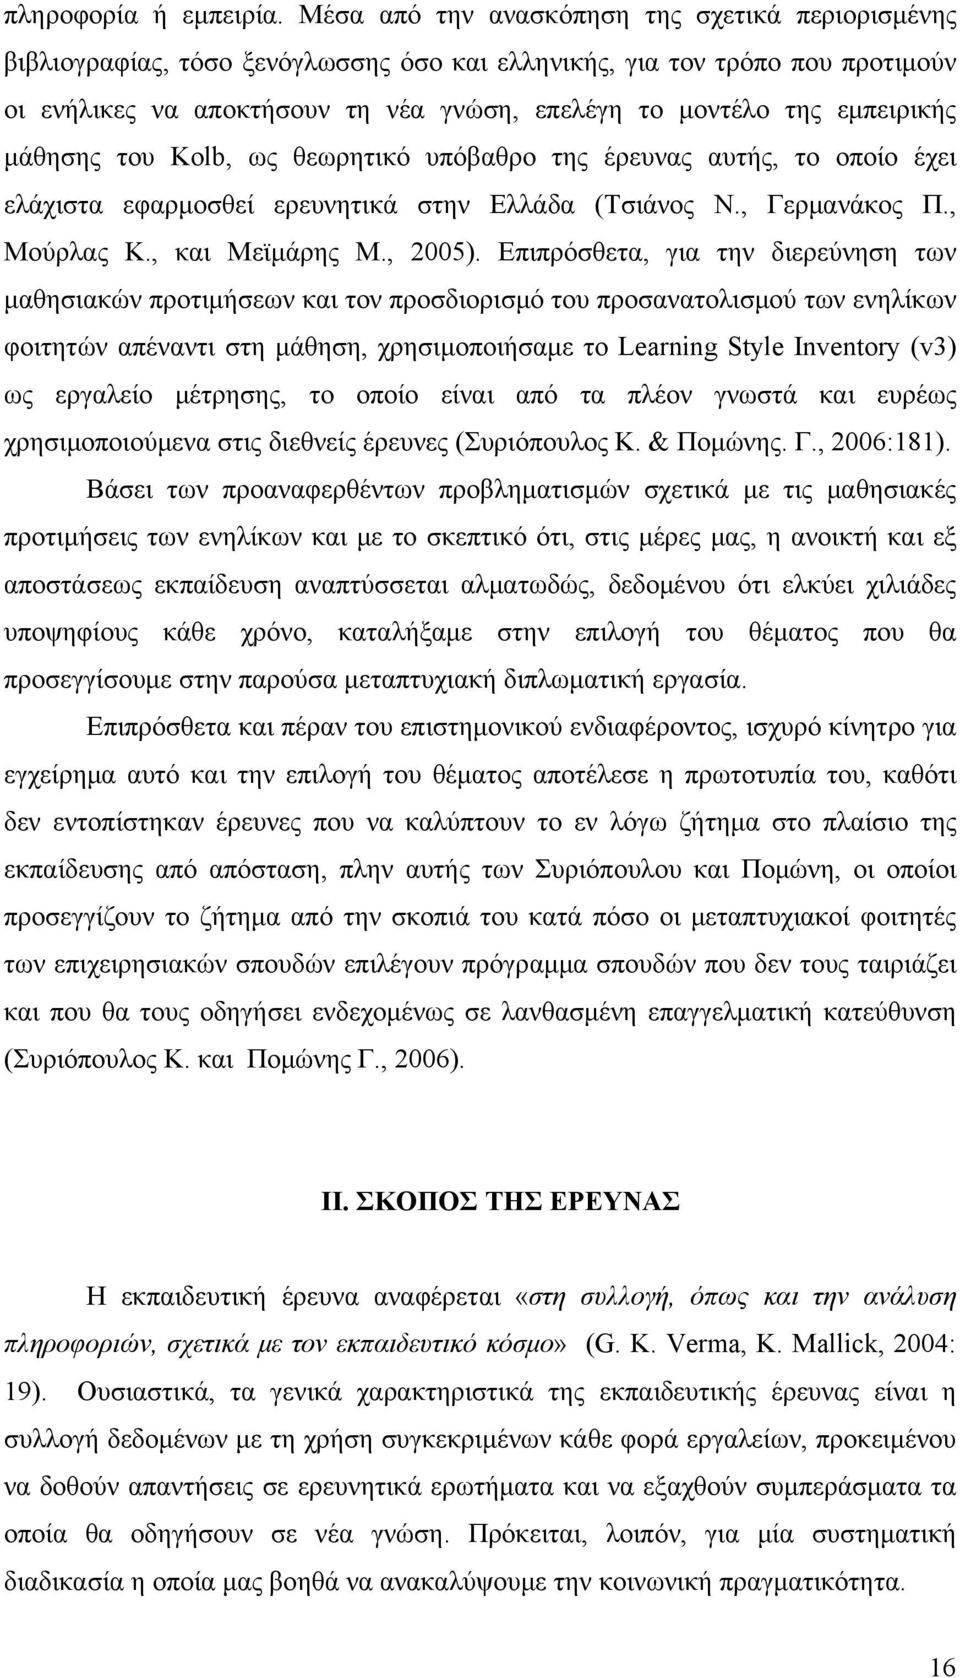 εμπειρικής μάθησης του Kolb, ως θεωρητικό υπόβαθρο της έρευνας αυτής, το οποίο έχει ελάχιστα εφαρμοσθεί ερευνητικά στην Ελλάδα (Τσιάνος Ν., Γερμανάκος Π., Μούρλας Κ., και Μεϊμάρης Μ., 2005).